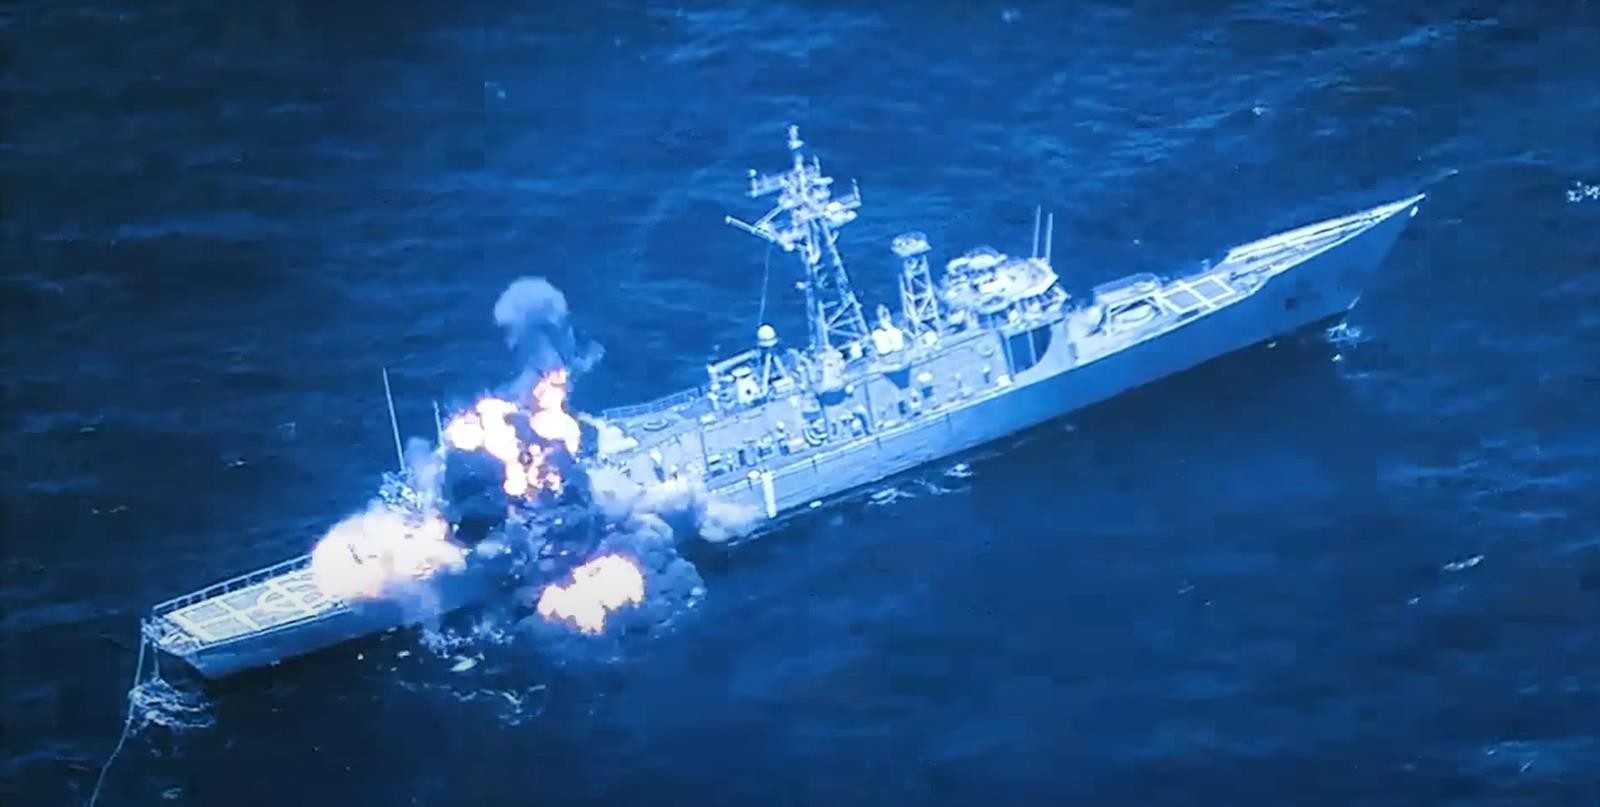 Amerykański okręt wojenny zniszczony, nagranie z momentu kontrolowanego ostrzału